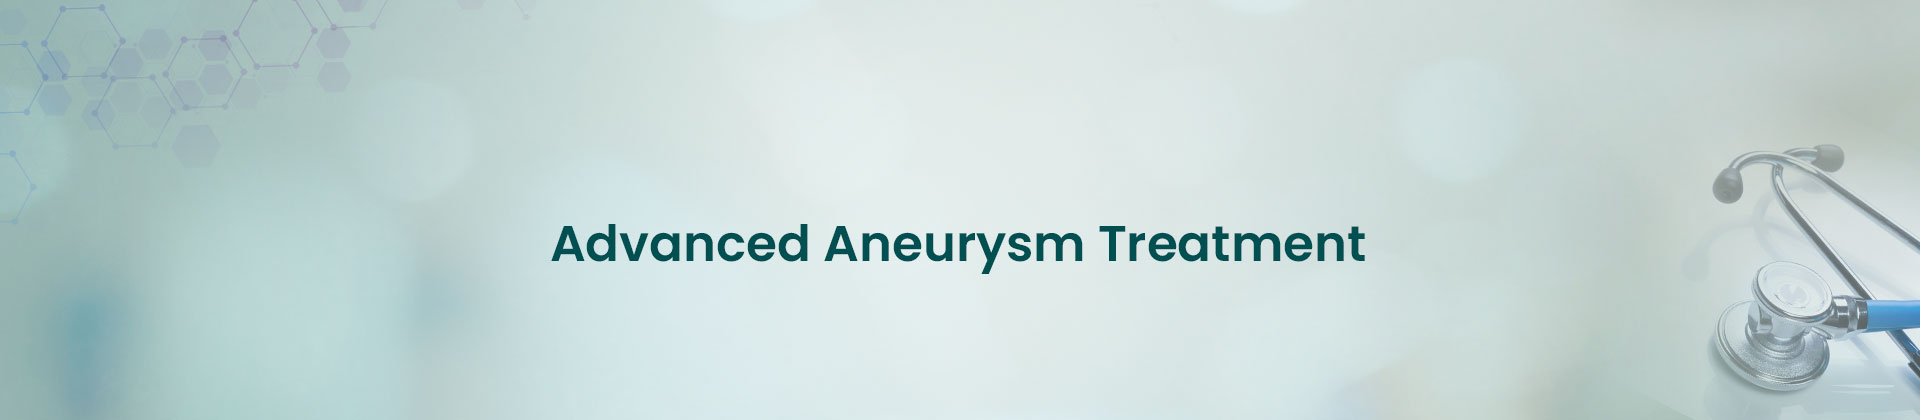 Advanced Aneurysm Treatment